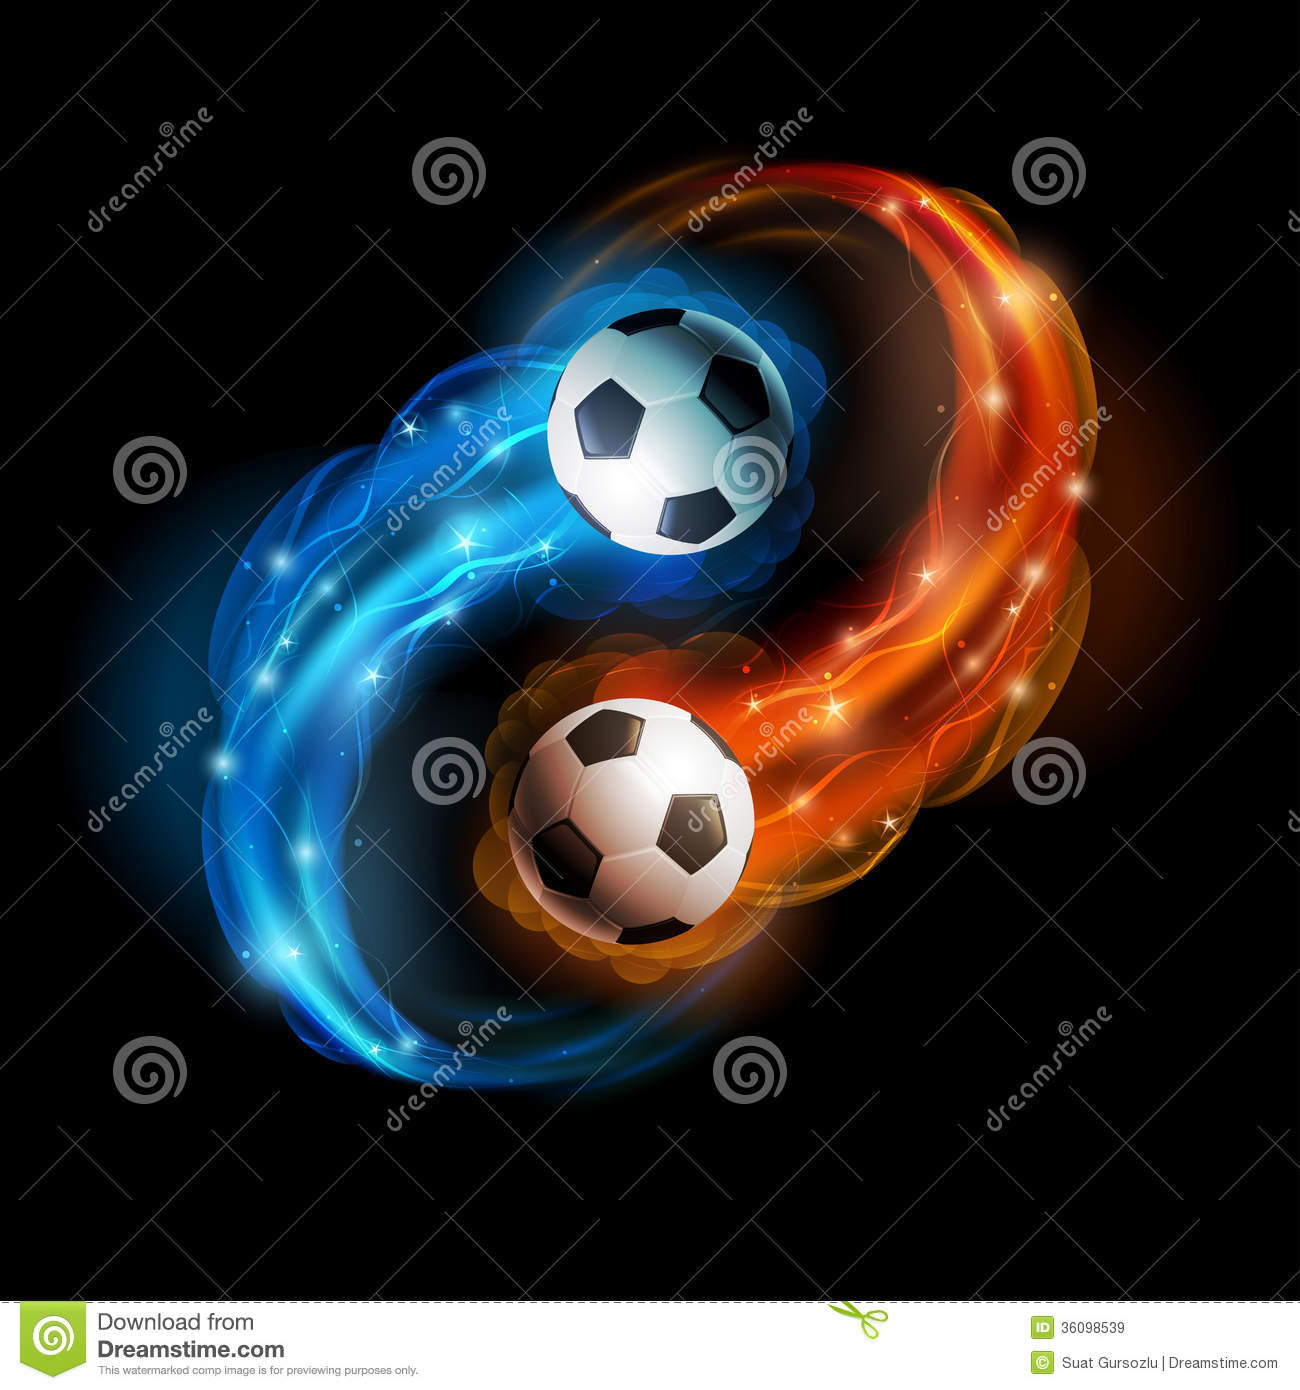 Cool Soccer Ball Wallpaper 1300x1390